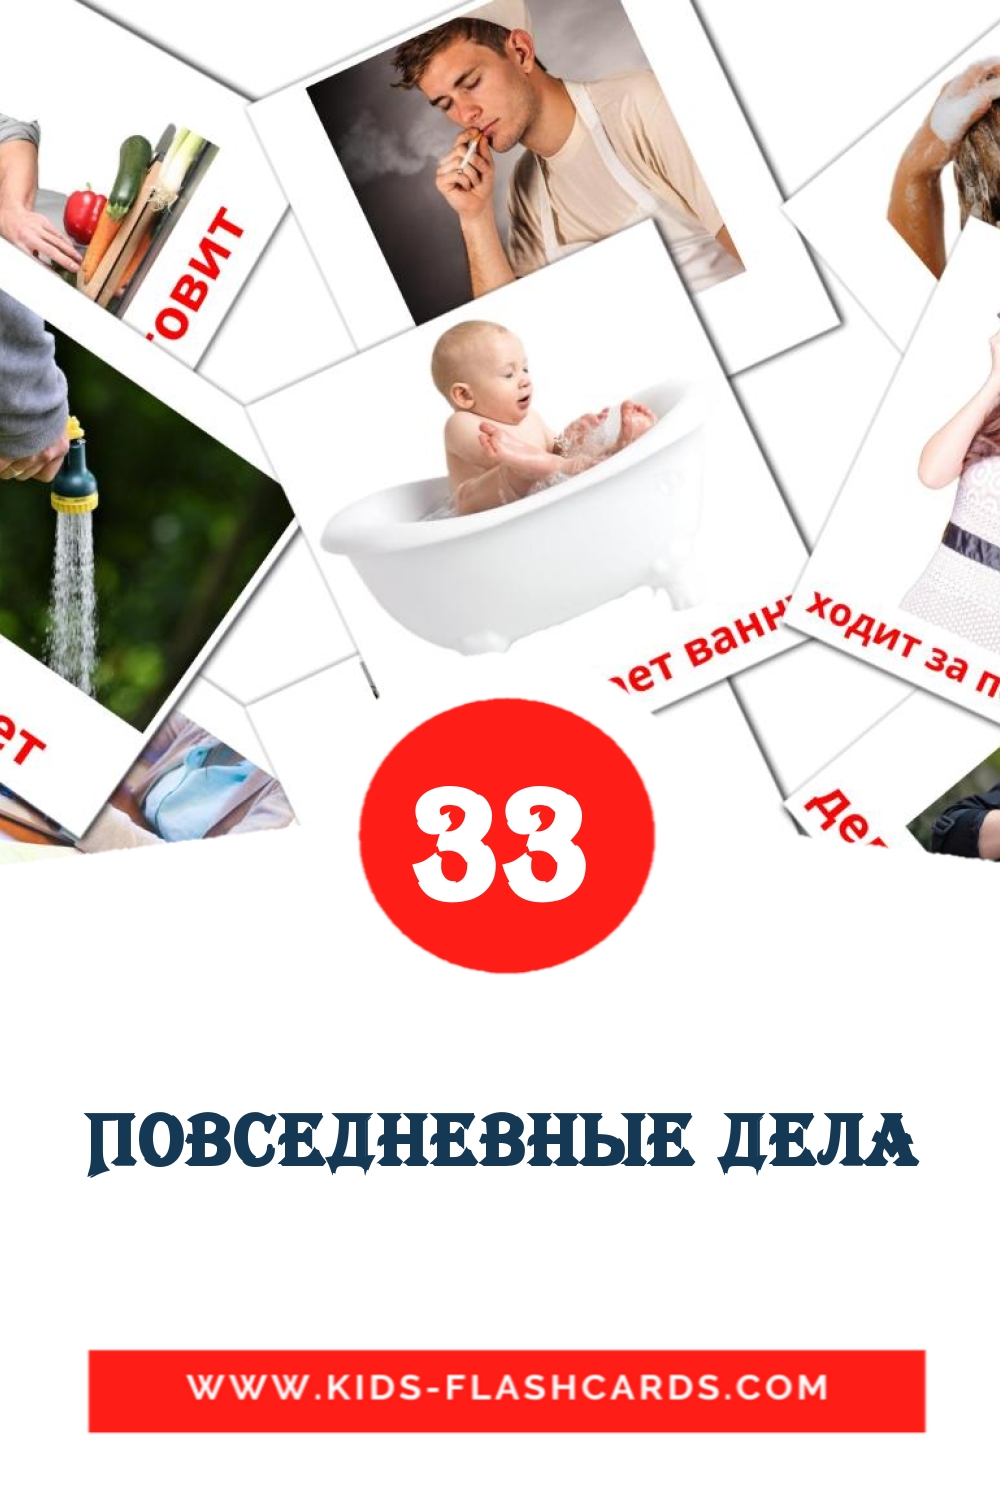 33 Cartões com Imagens de Повседневные дела para Jardim de Infância em russas